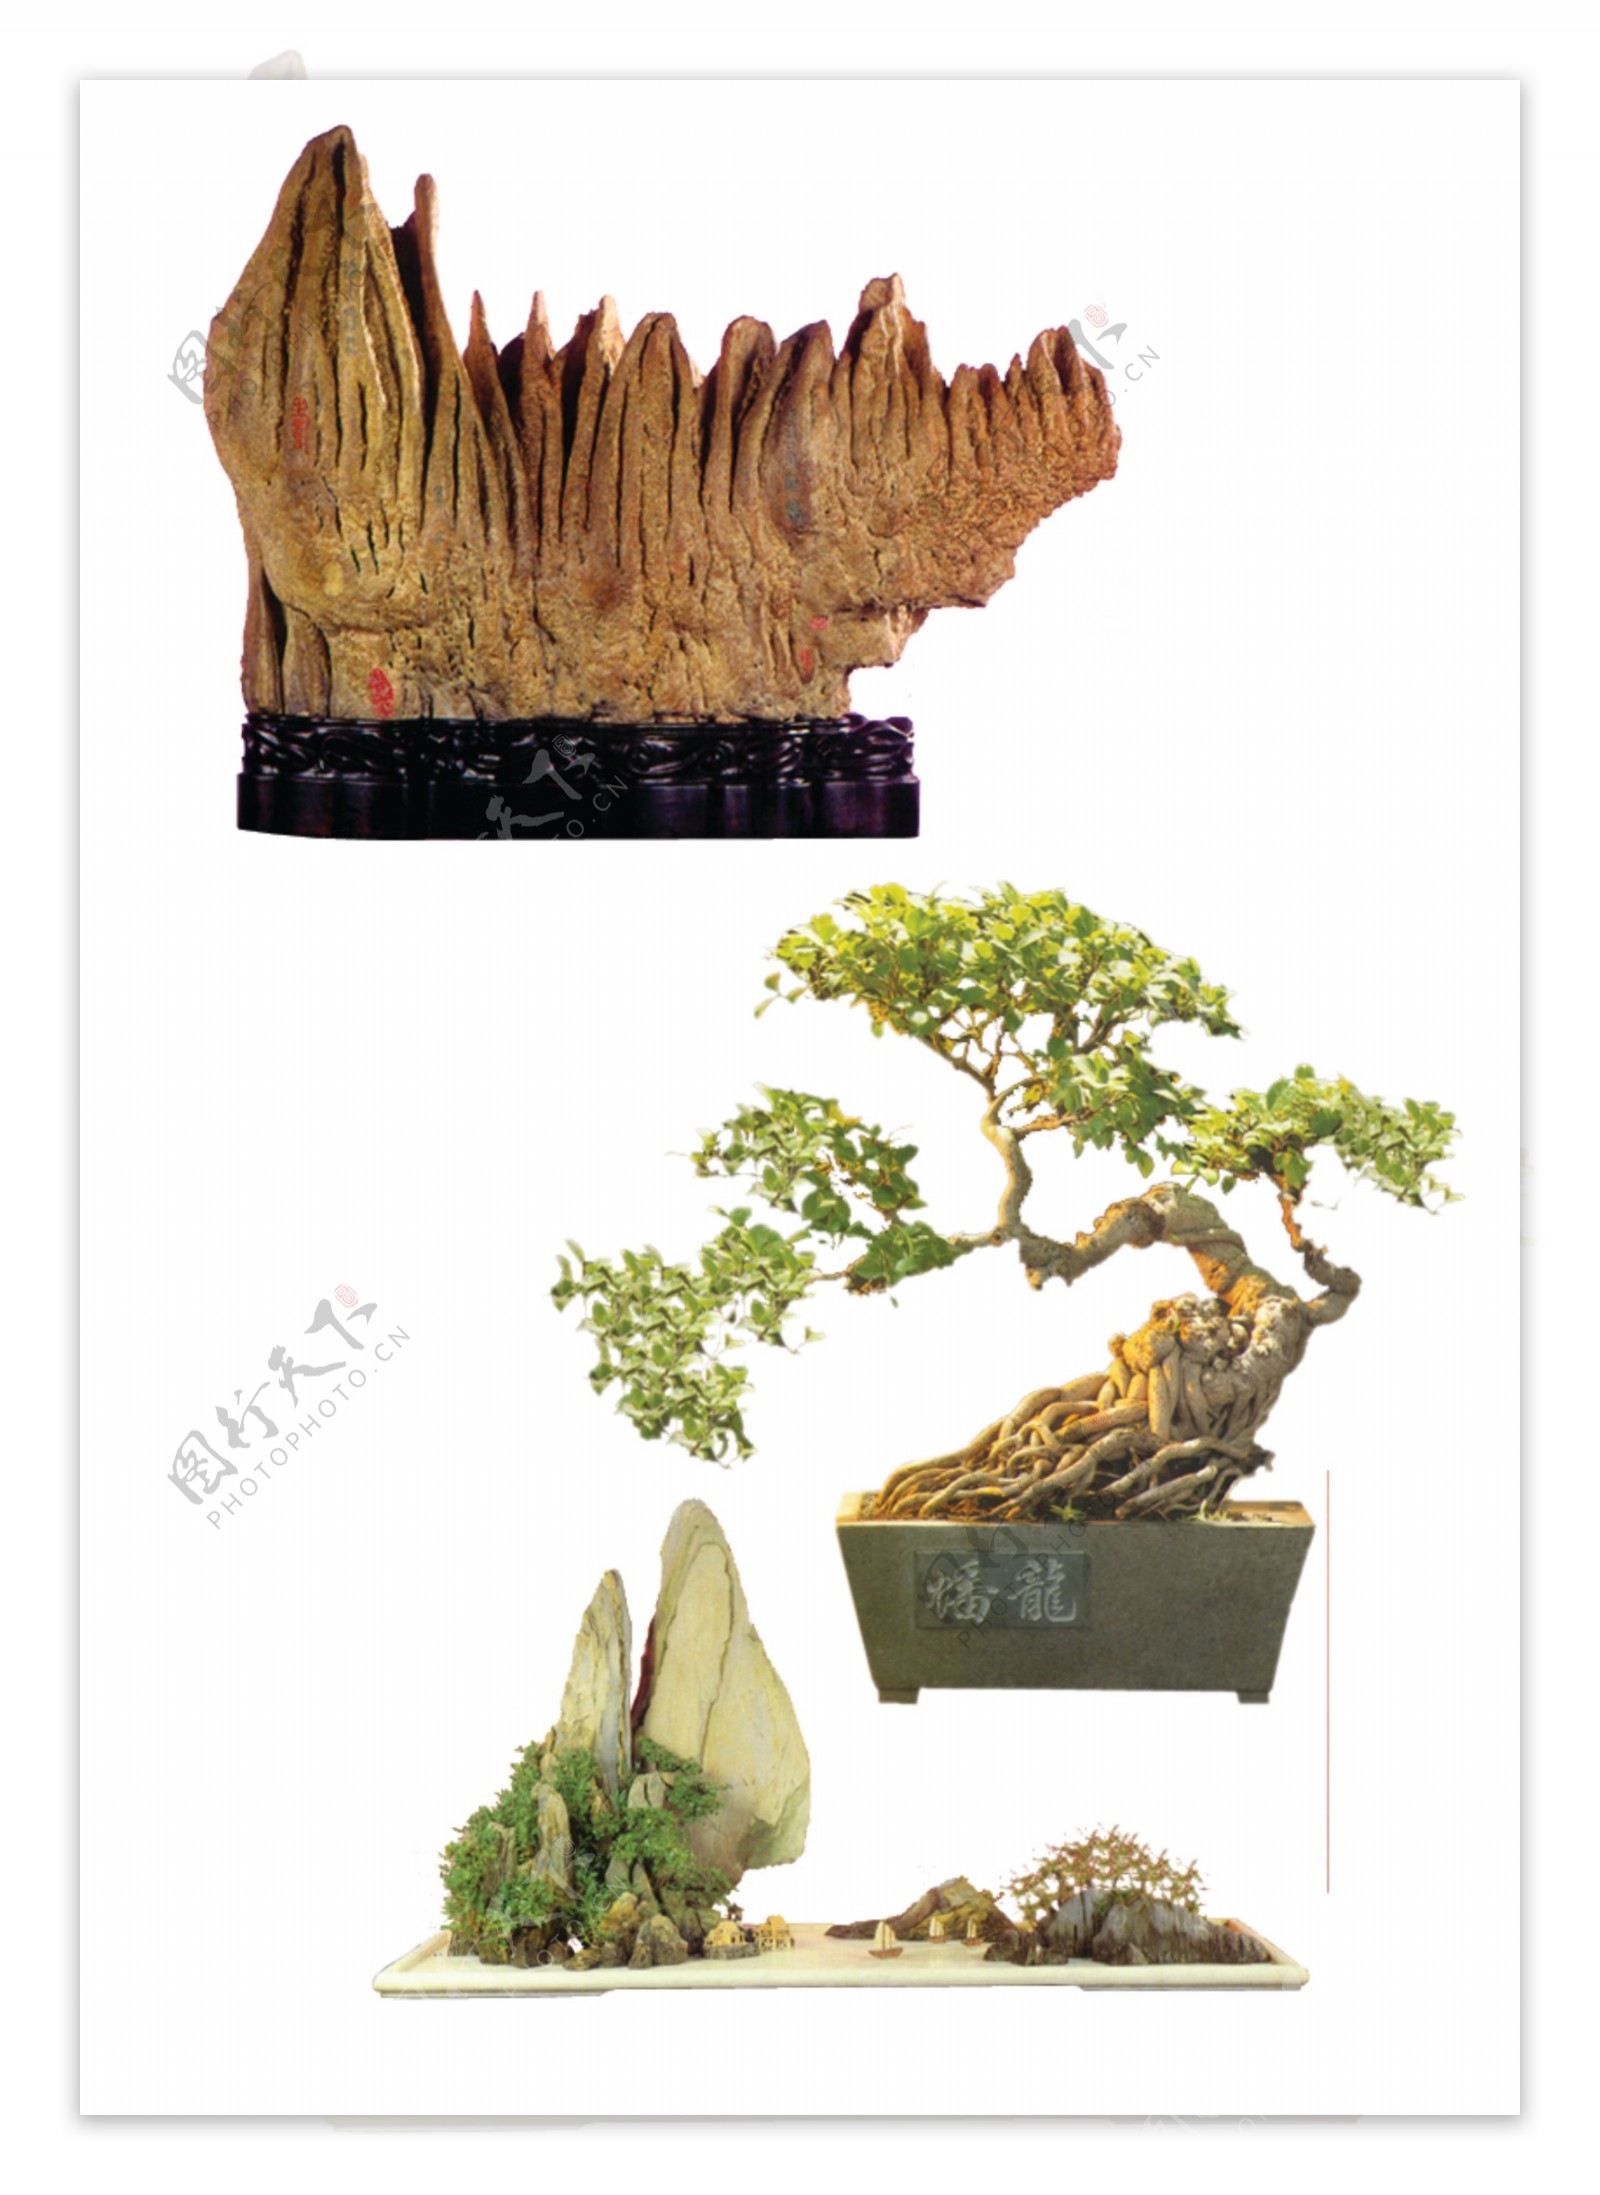 植物盆景图片